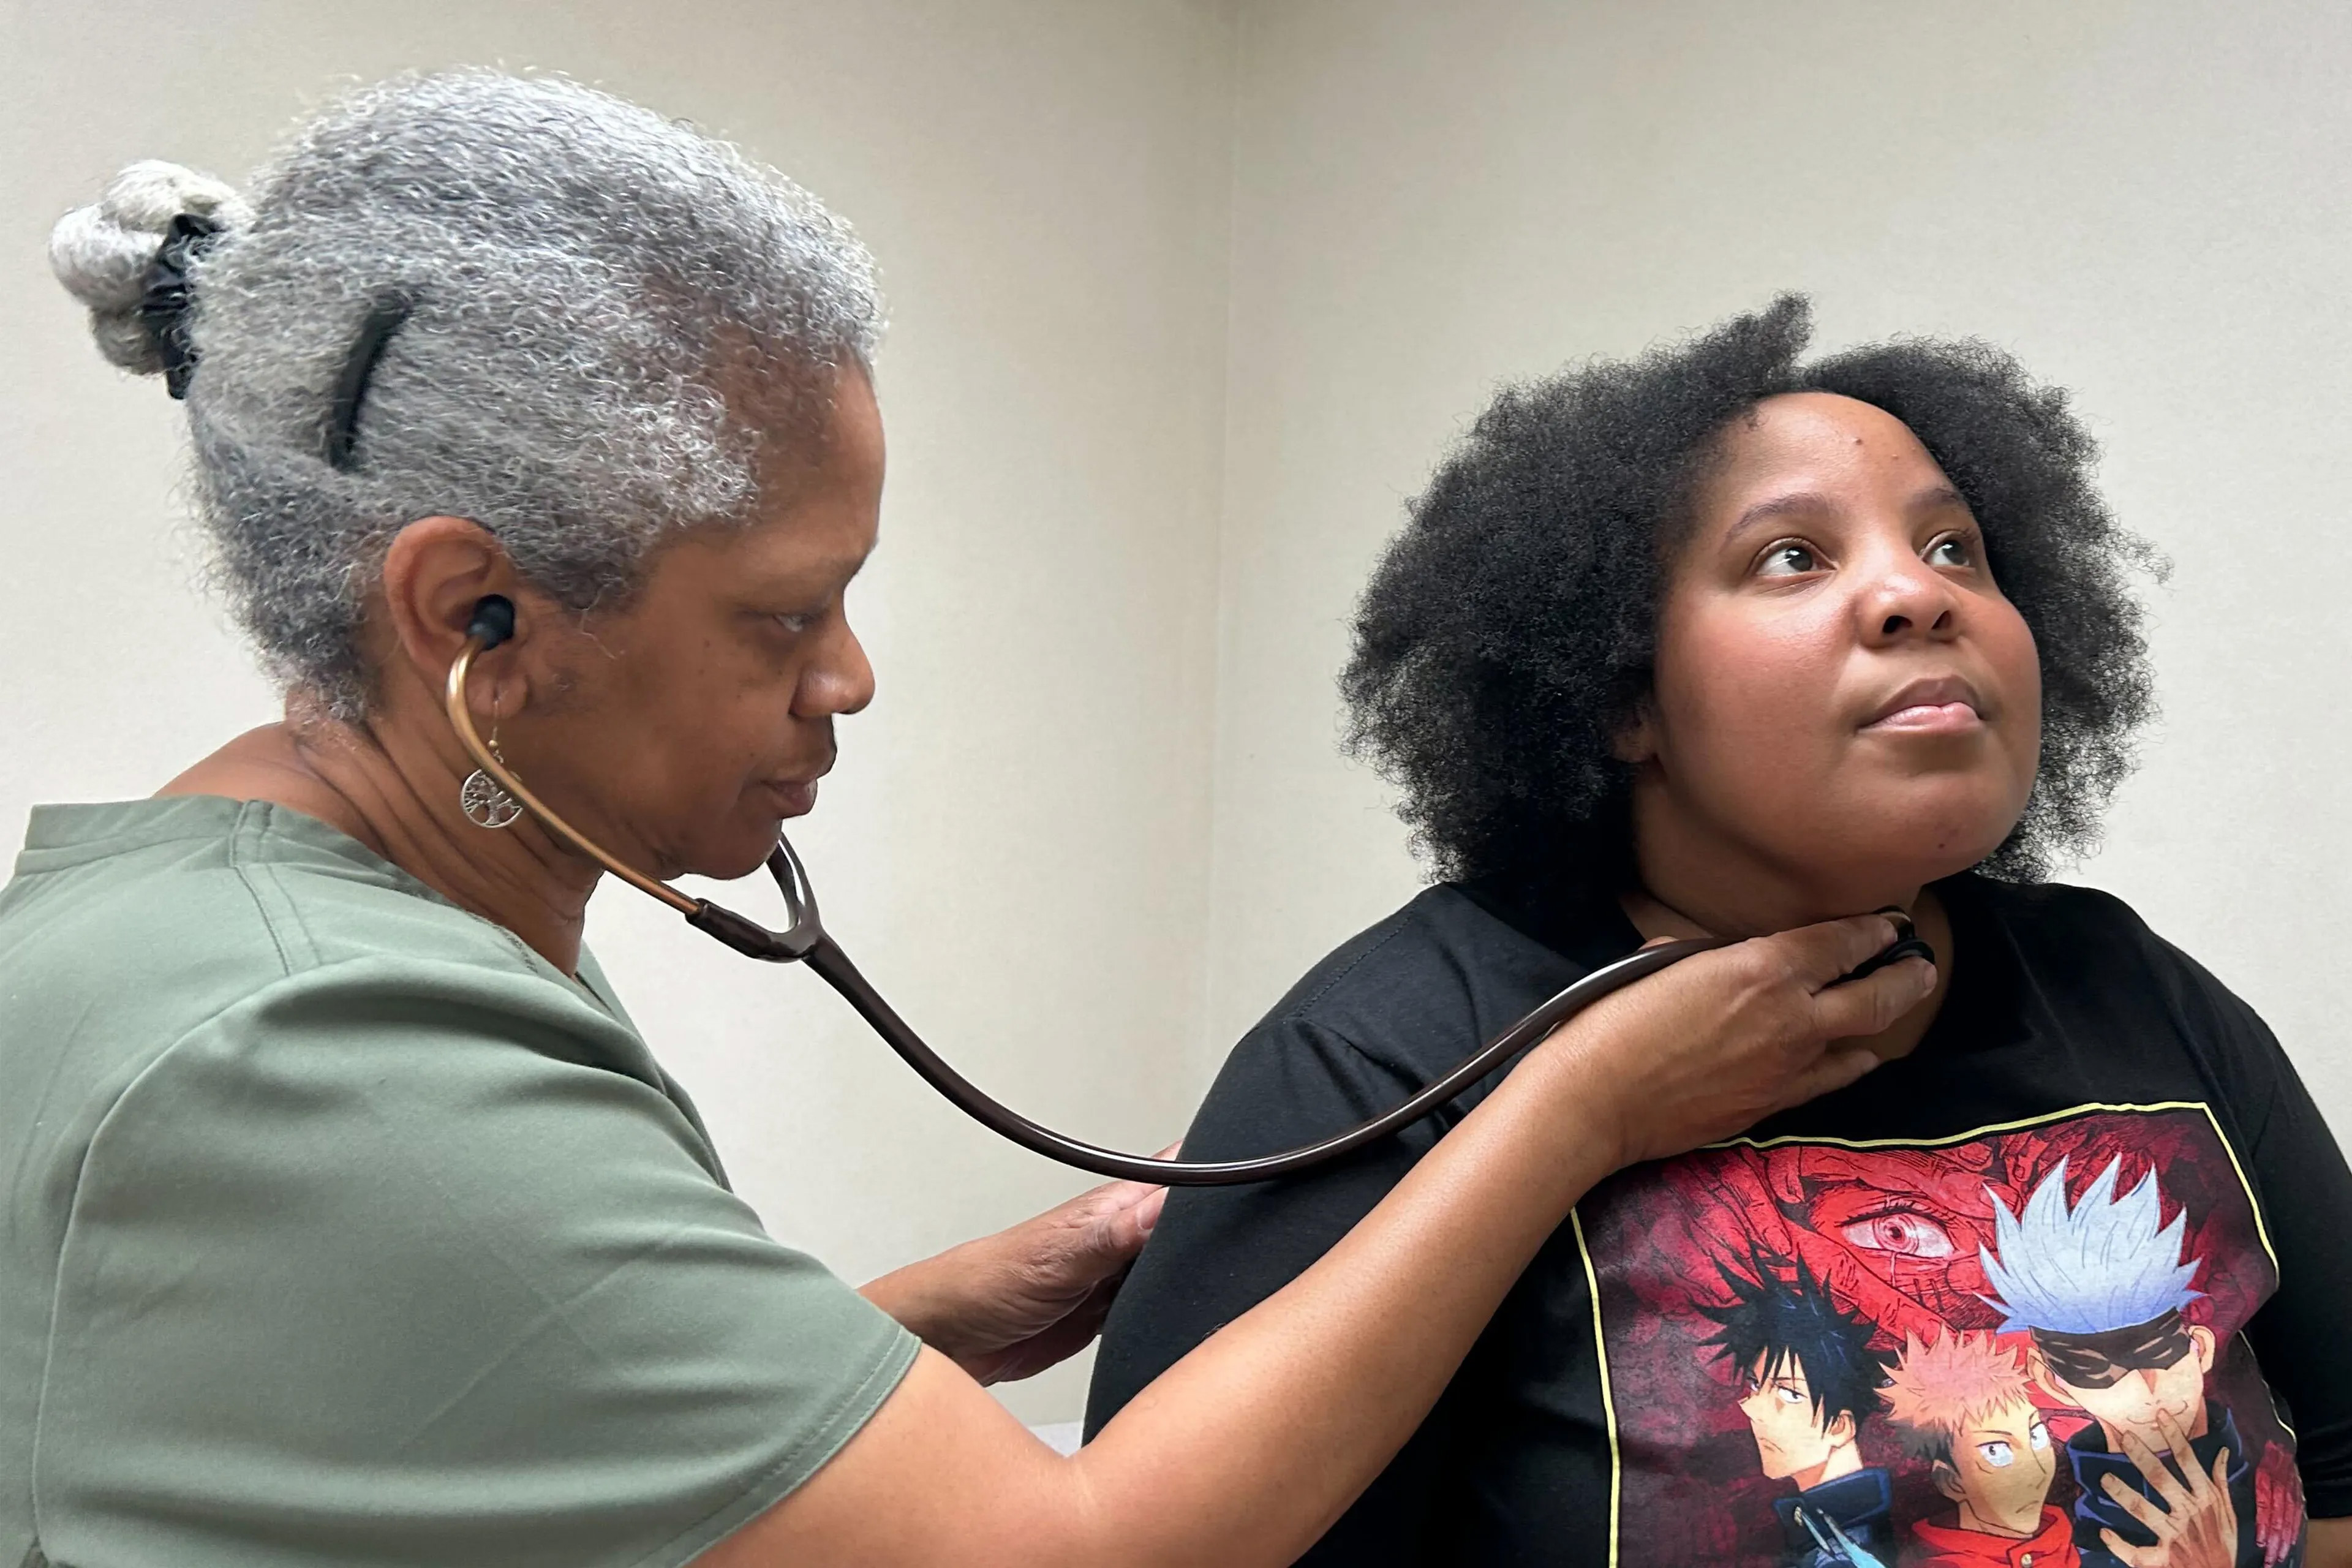 Da zwei Ärzte in den Ruhestand gehen wollen, bündelt eine Stadt in Alabama ihre Gesundheitsversorgungsoptionen